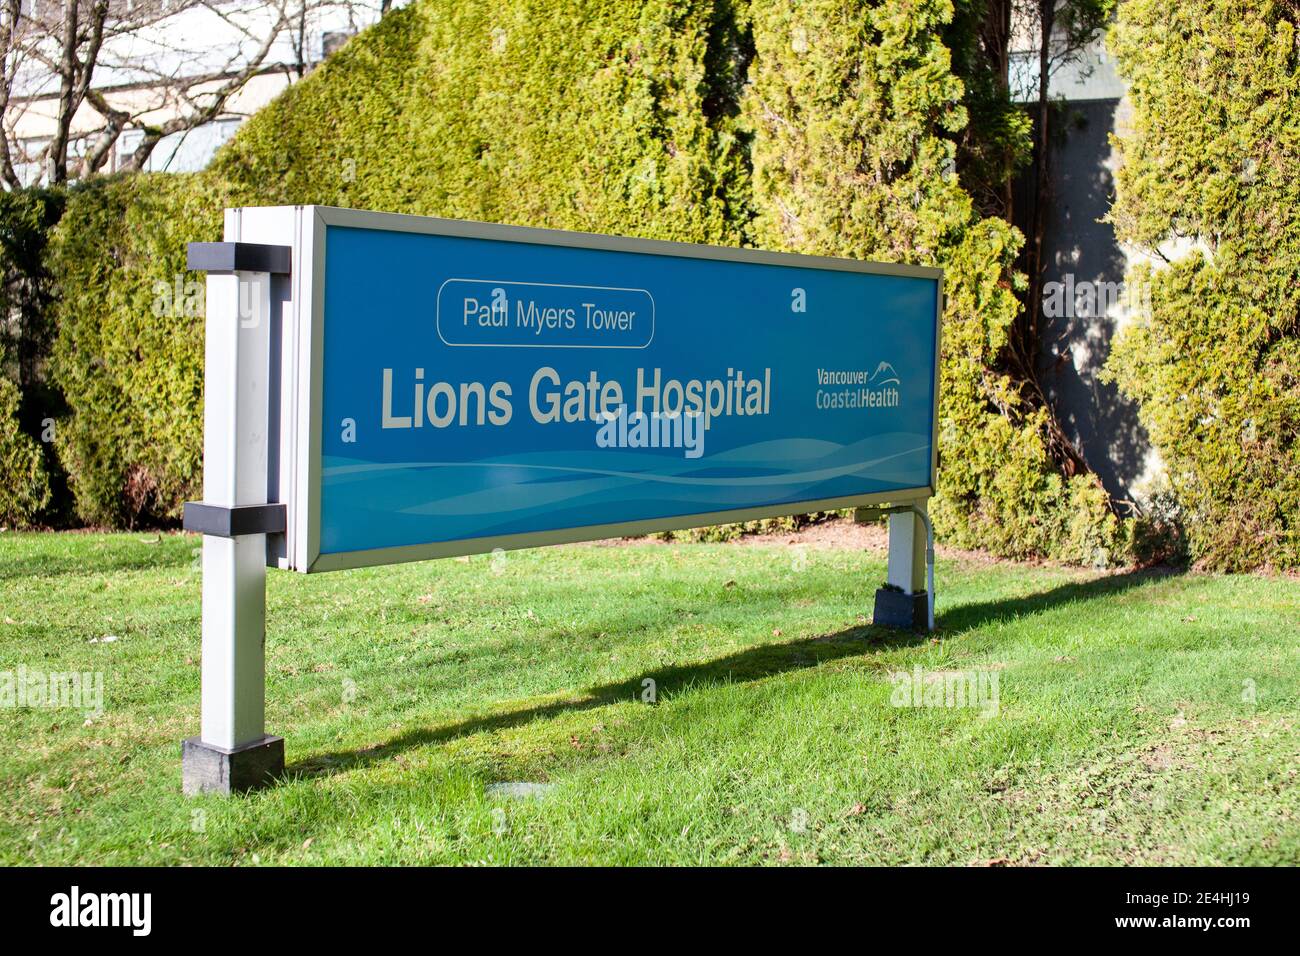 North Vancouver, Colombie-Britannique, Canada - 01-23-2021: Le panneau d'entrée à l'hôpital Lions Gate, qui fait partie de l'autorité sanitaire côtière de Vancouver Banque D'Images